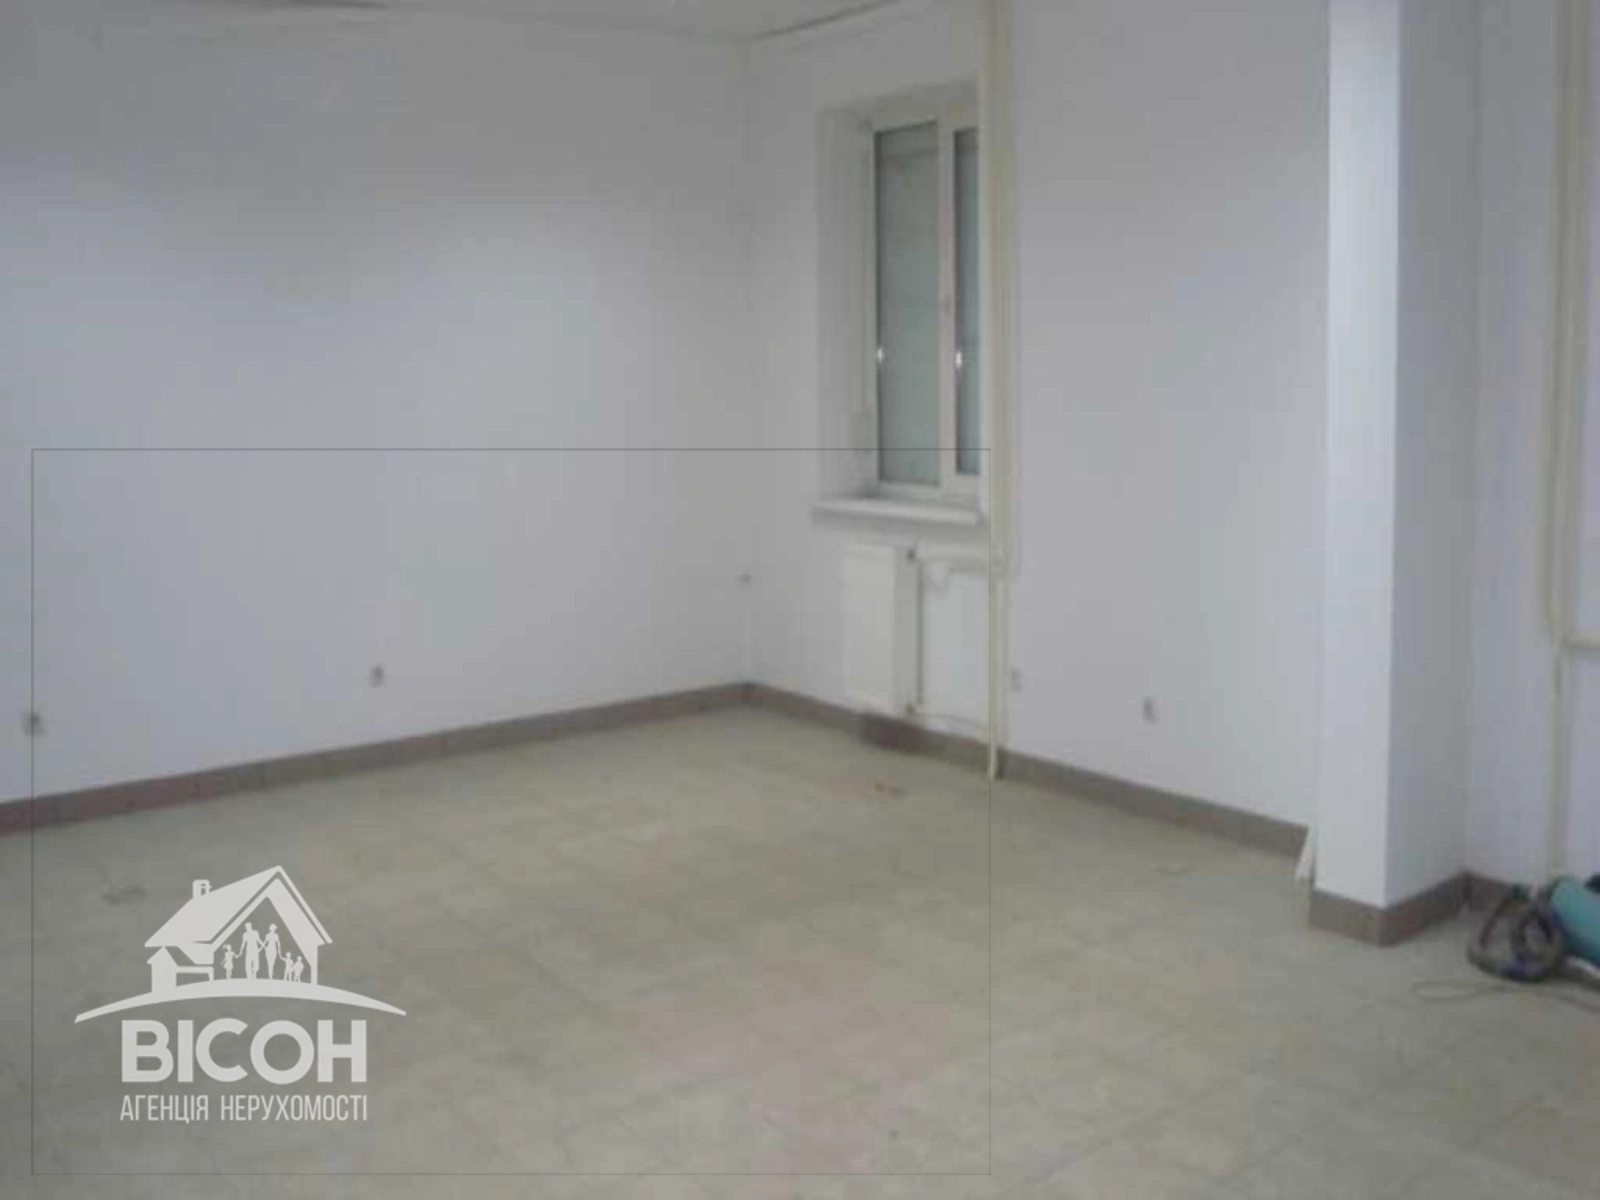 Real estate for sale for commercial purposes. 70 m², 1st floor. Chernivetska vul., Ternopil. 